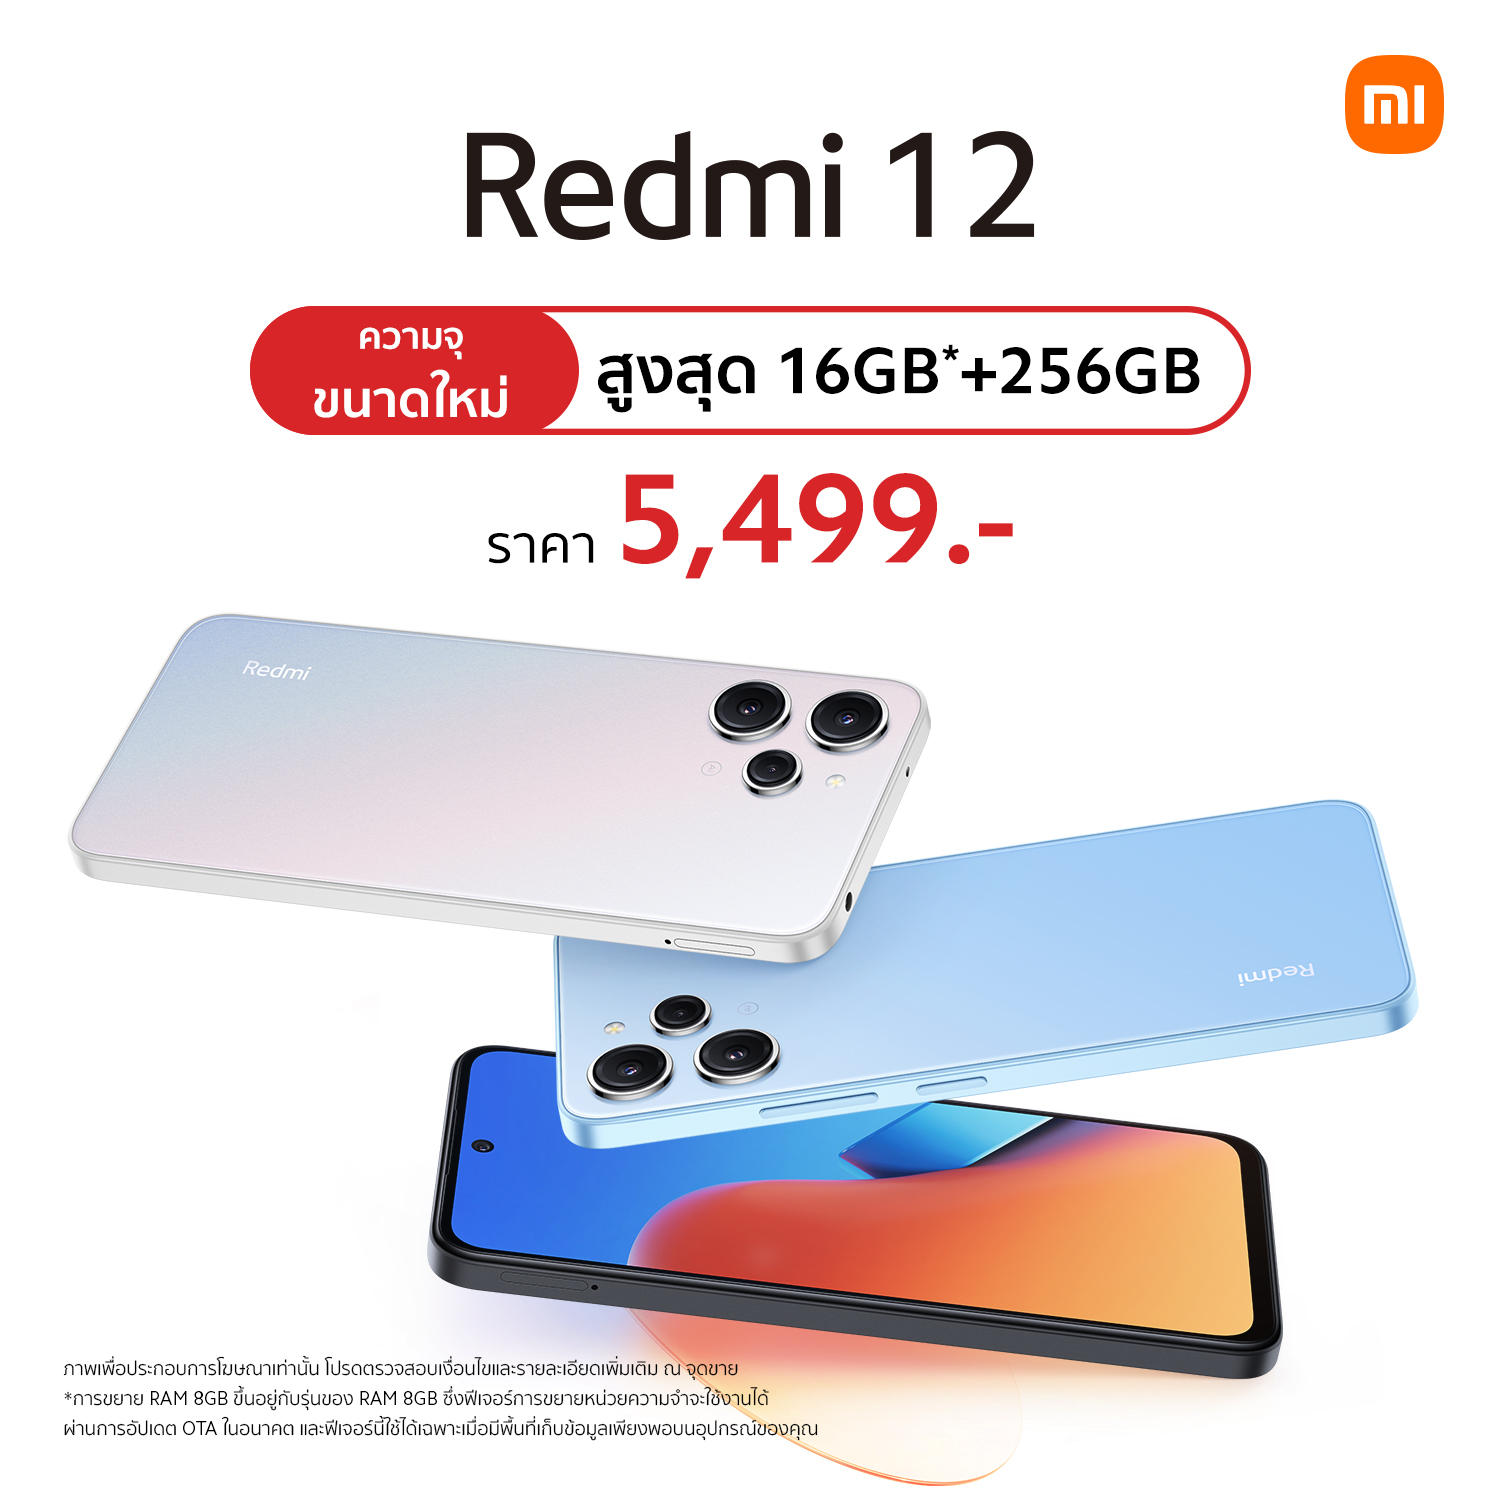 Redmi 12 เปิดตัวความจุใหม่ 8/256GB เยอะกว่าเดิม ในงบ 5,499 บาท